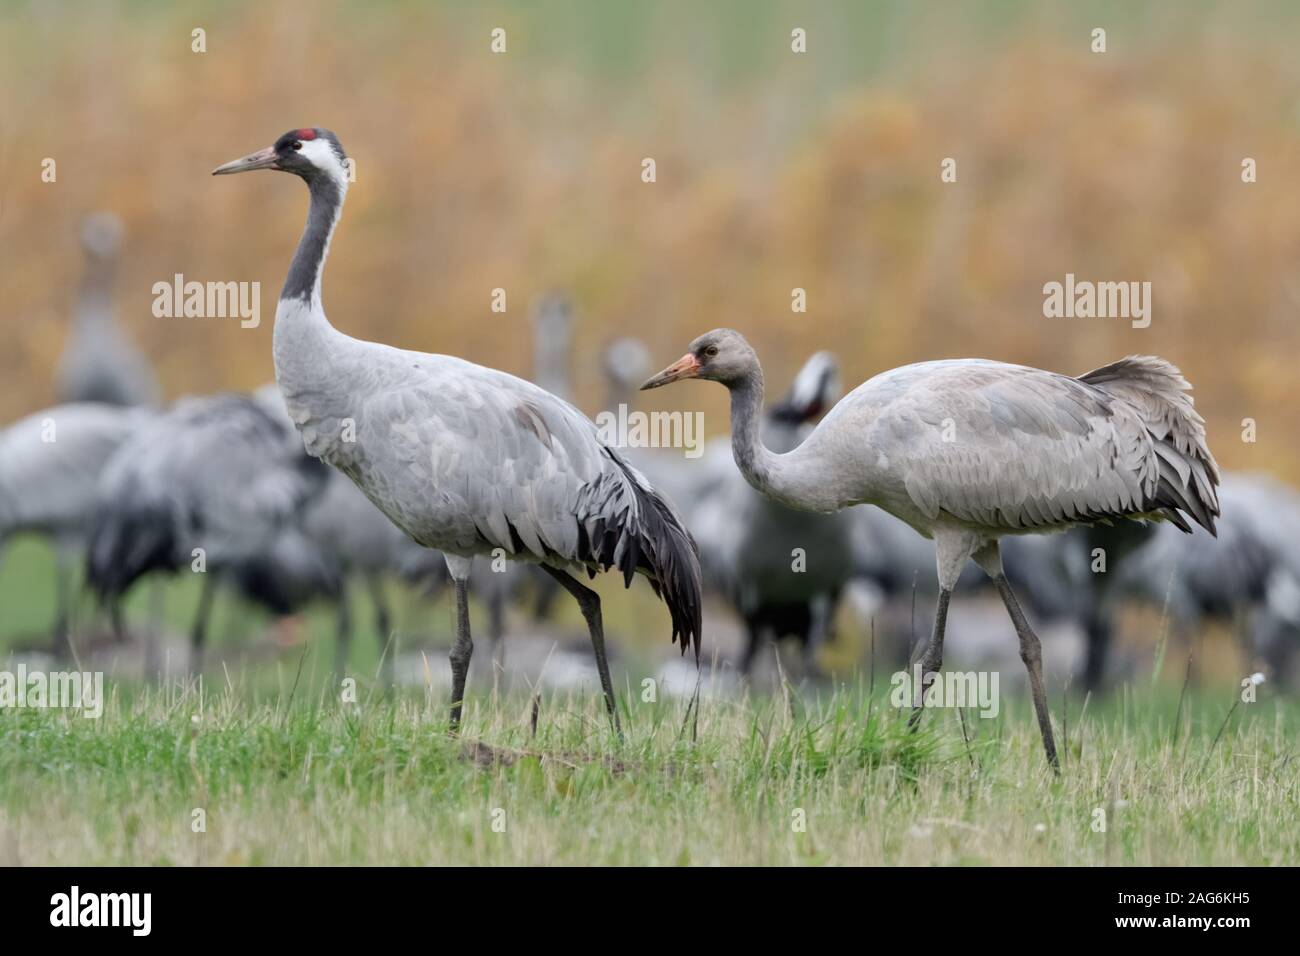 Common Crane - eBird